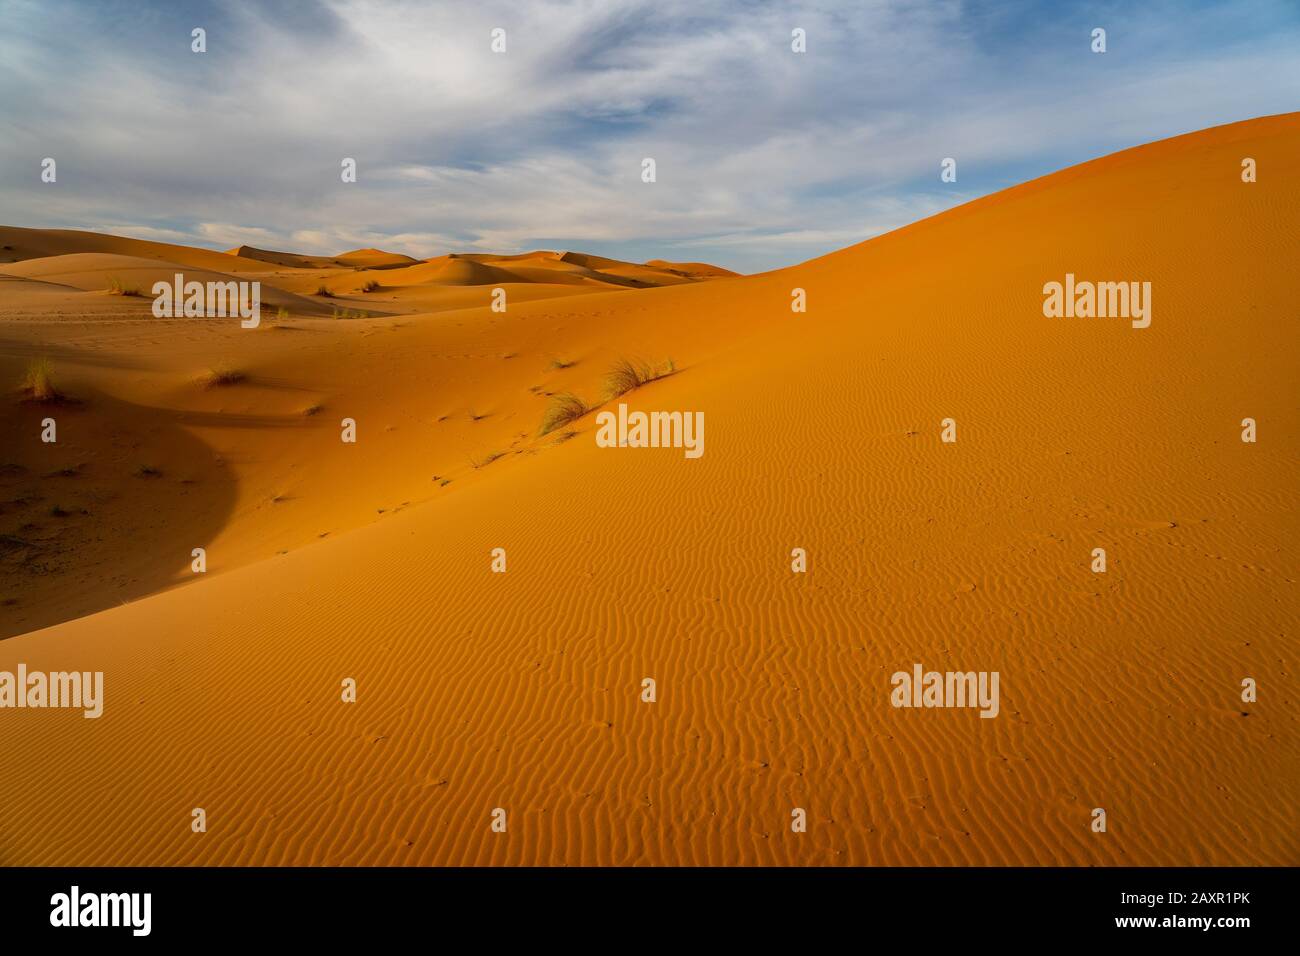 Dunes de sable dans le désert du Sahara, Maroc Banque D'Images